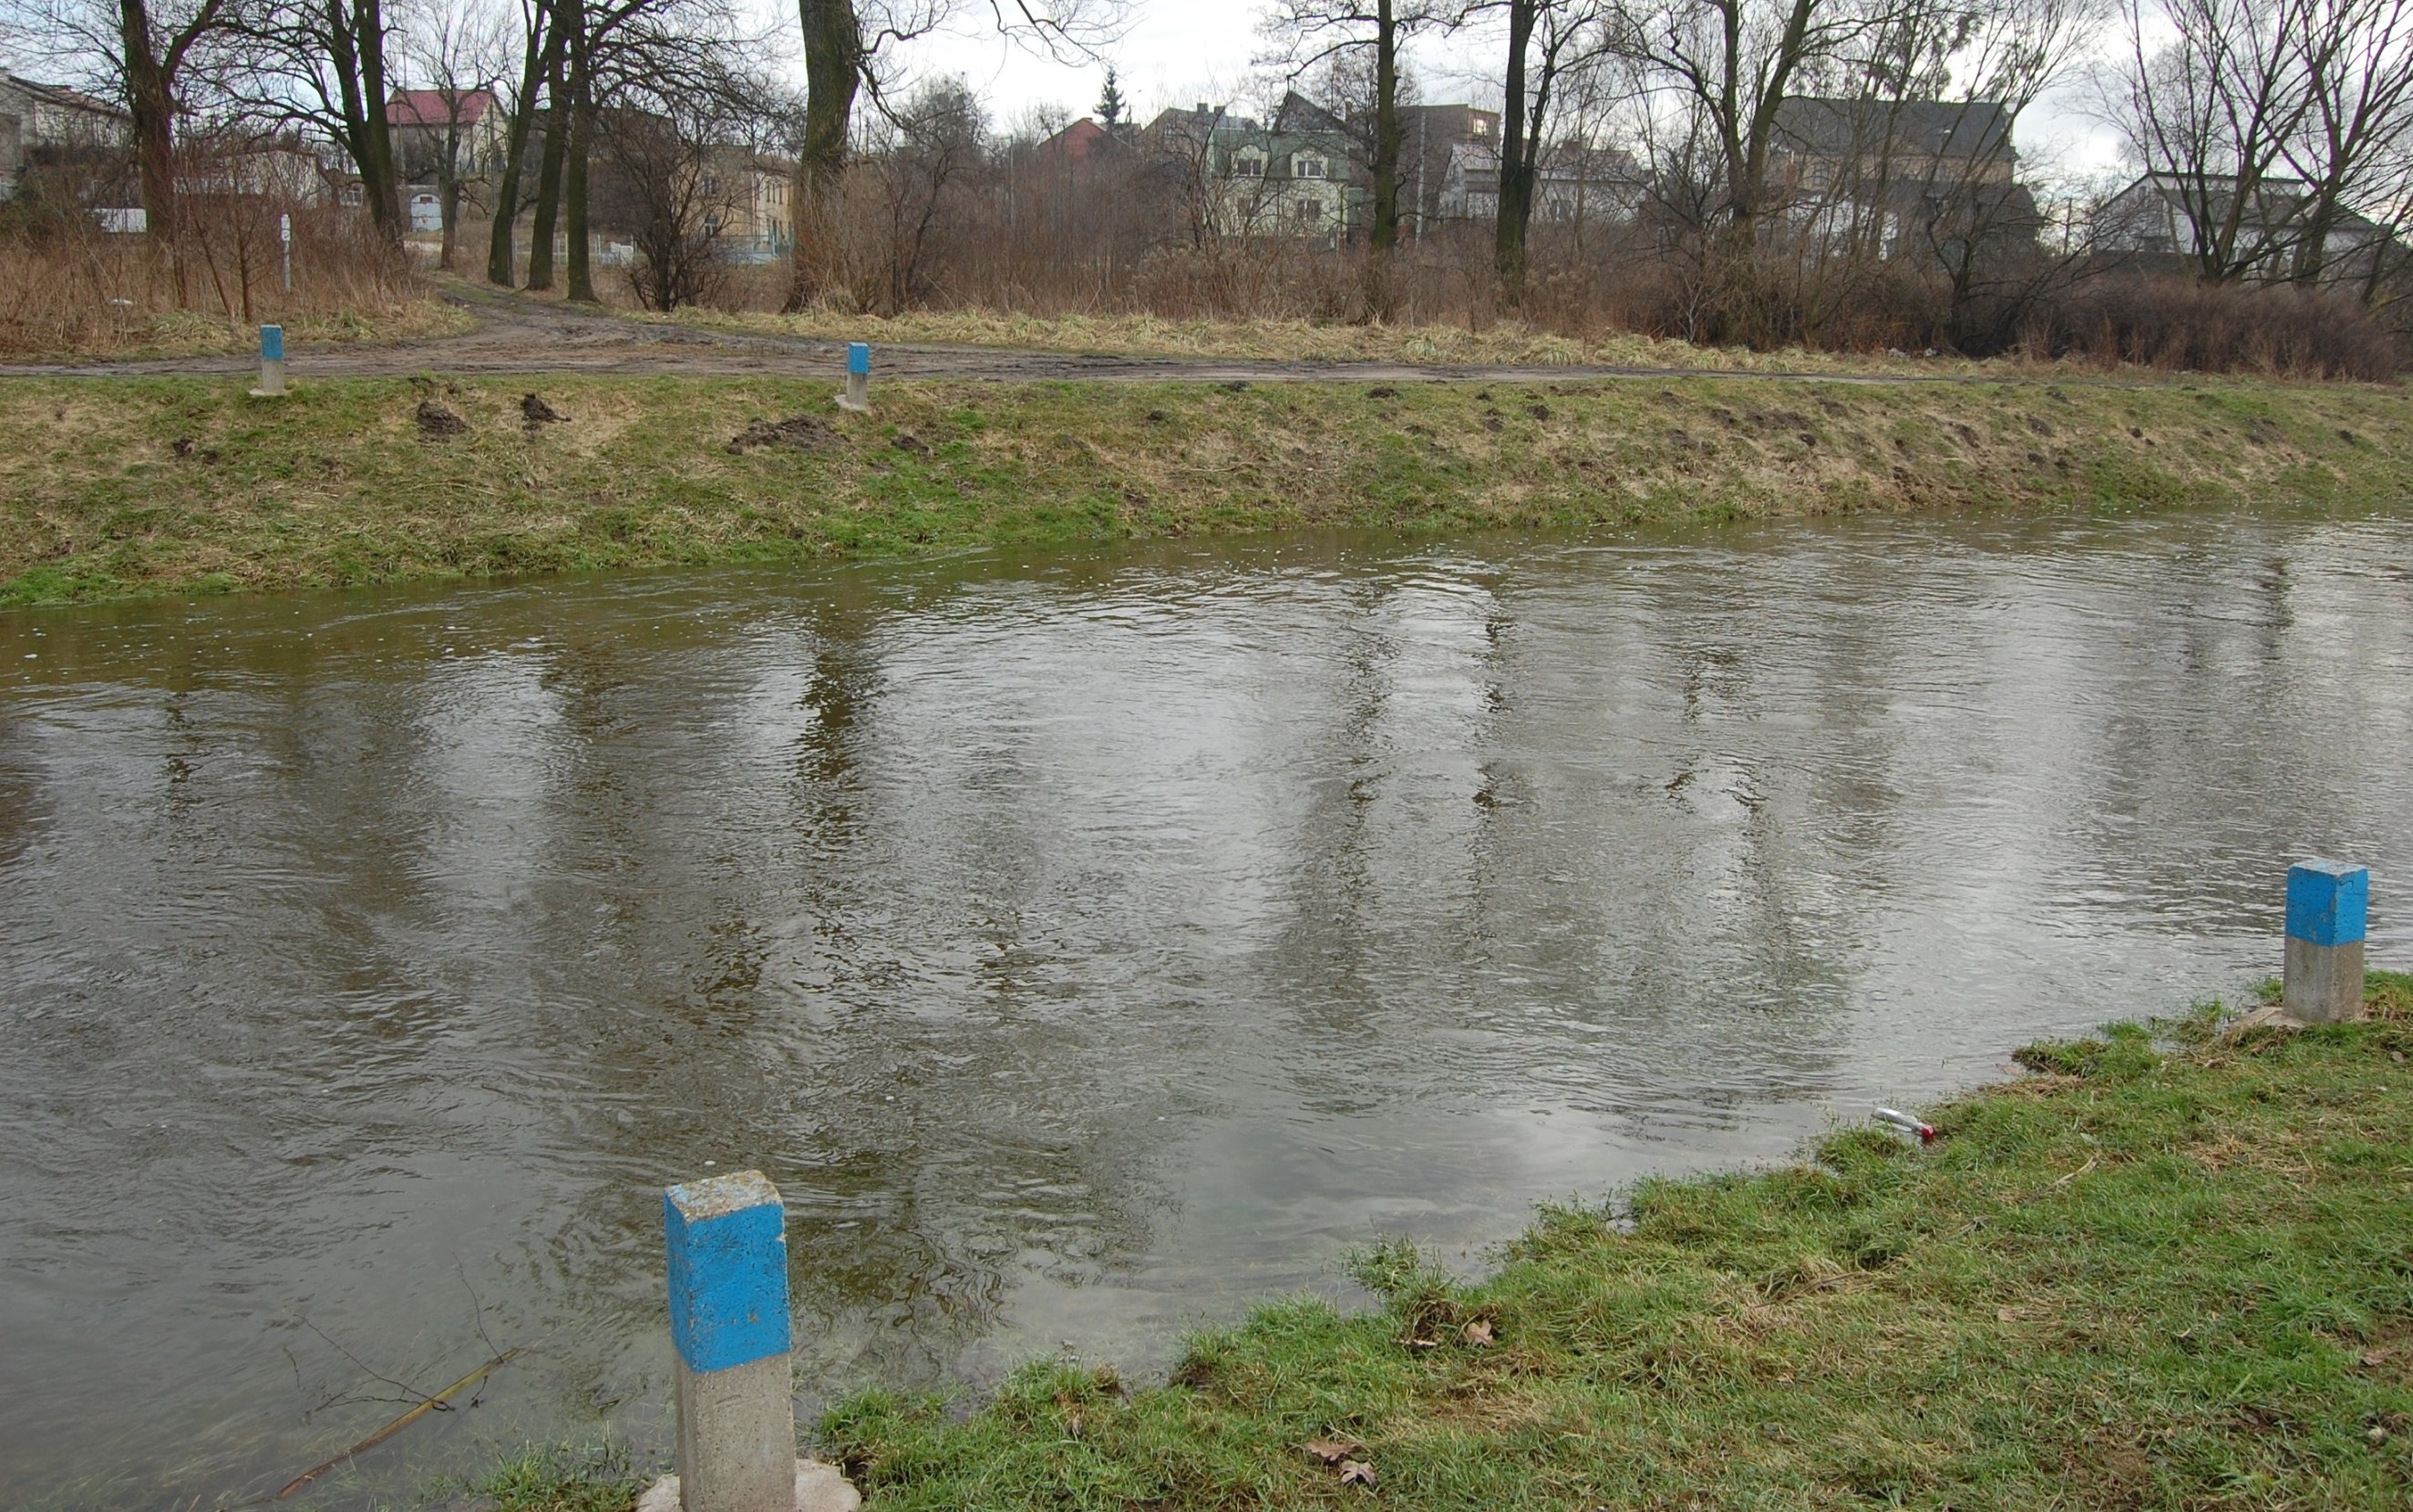 Błękitne słupki wyznaczają miejsce po dawnym moście na Sierpienicy, który prowadził z browaru rodziny Pehlke do widocznej w oddali, za szpalerem drzew, lodowni, luty 2011 r.